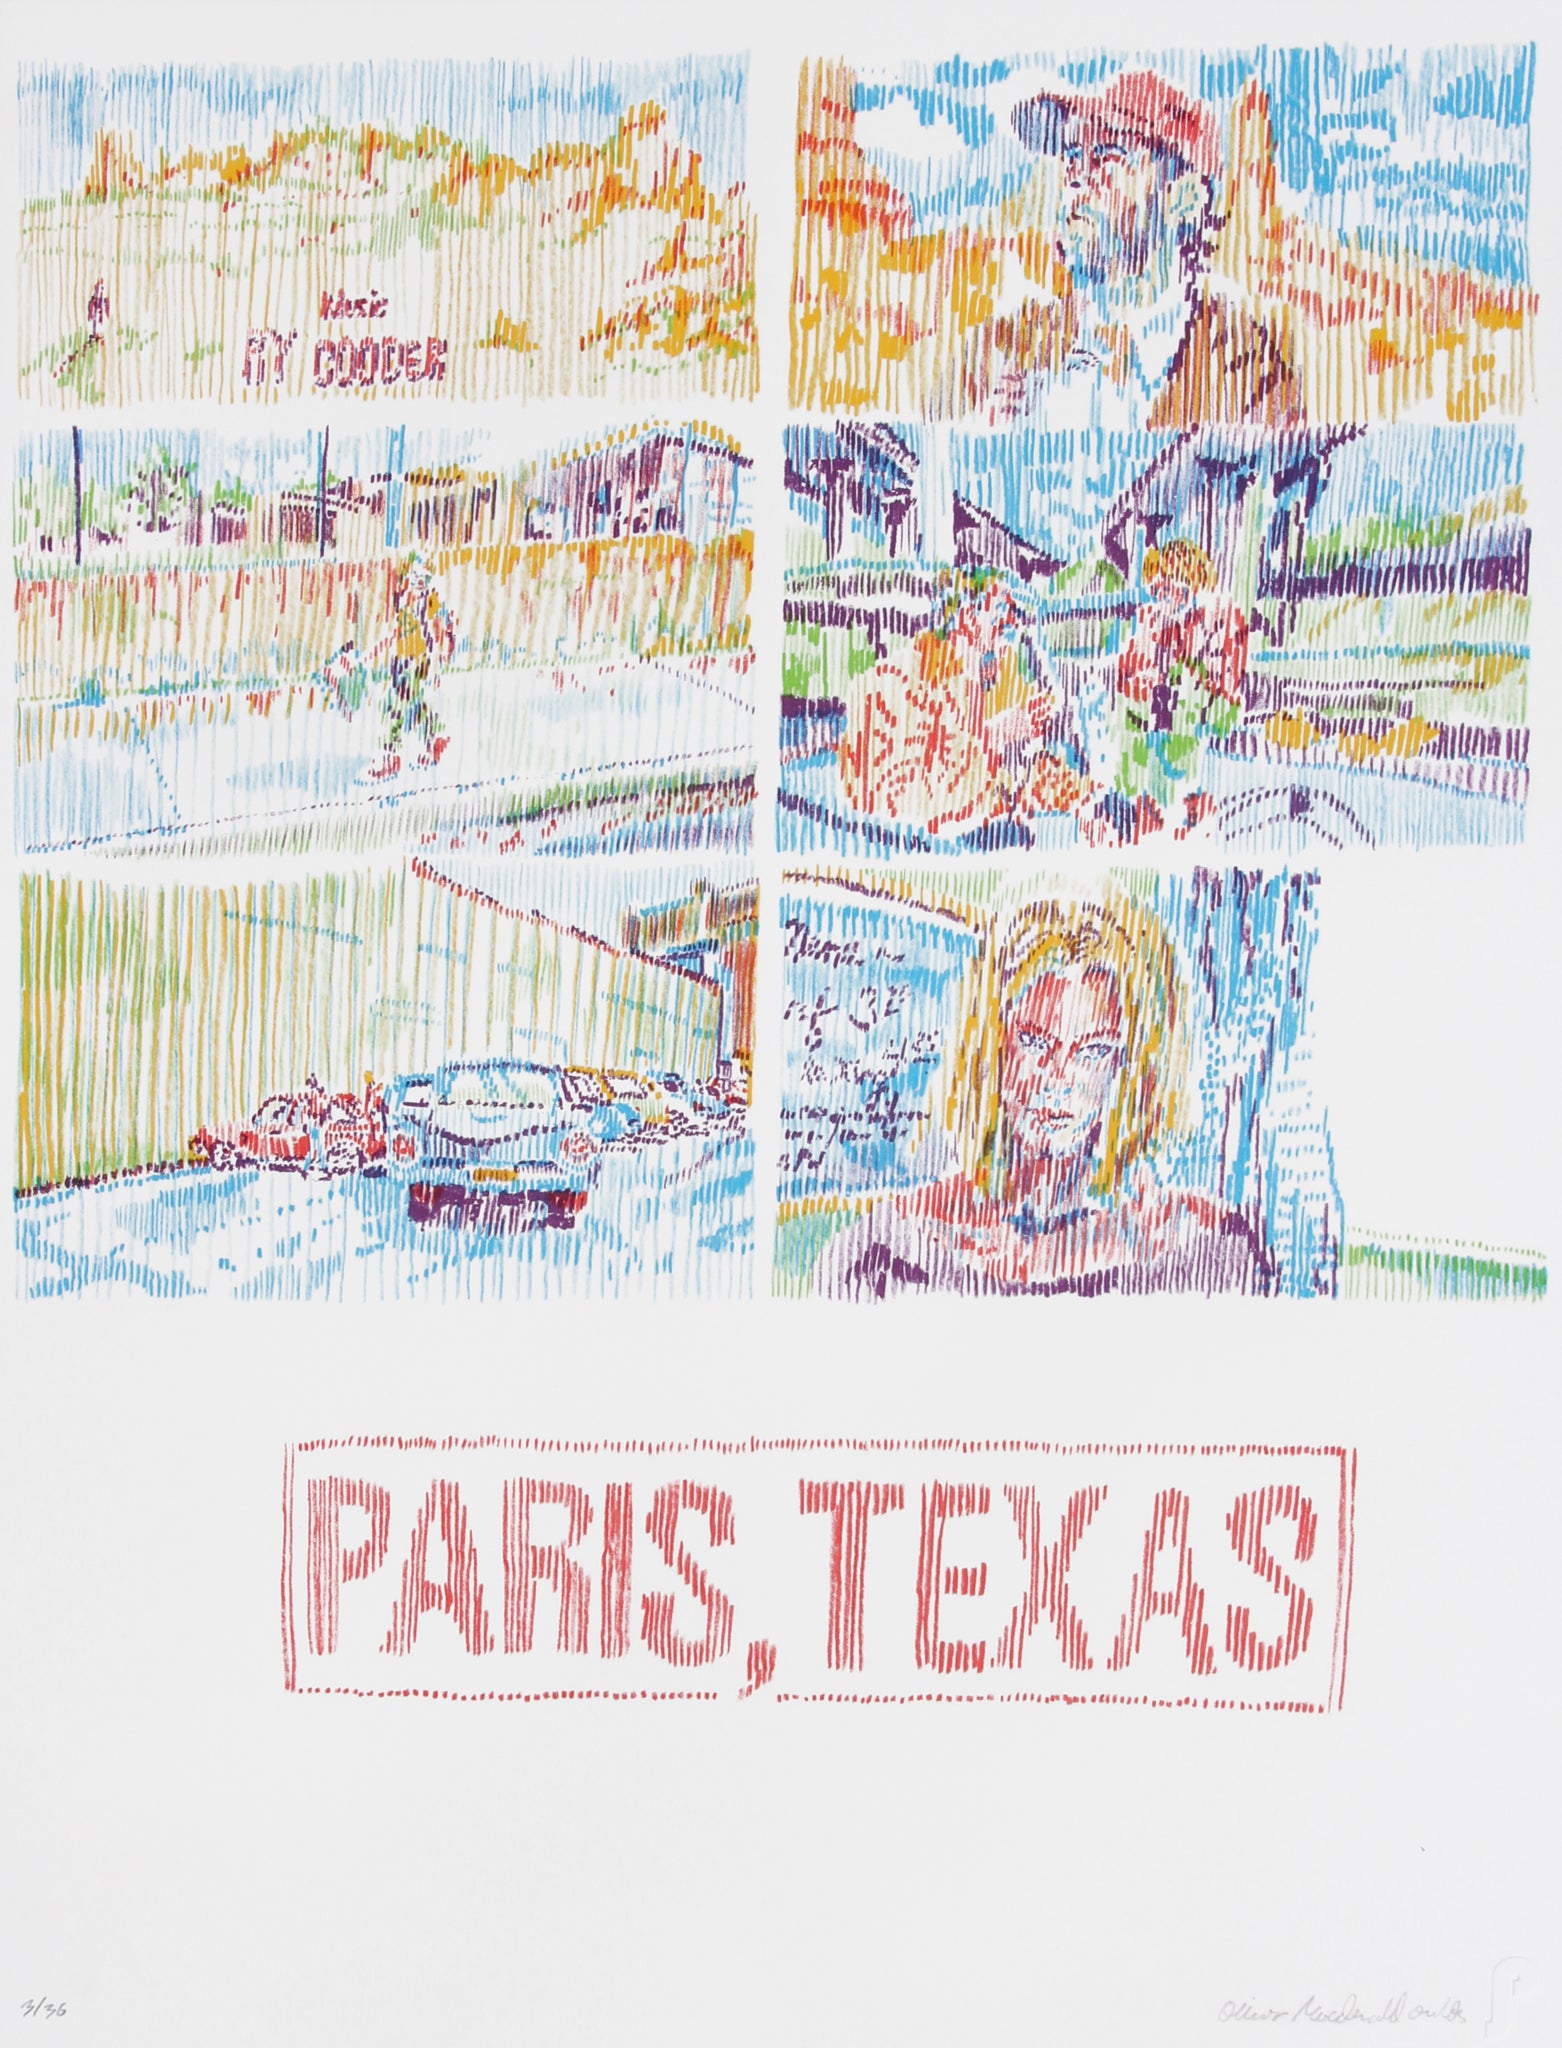 Paris, Texas